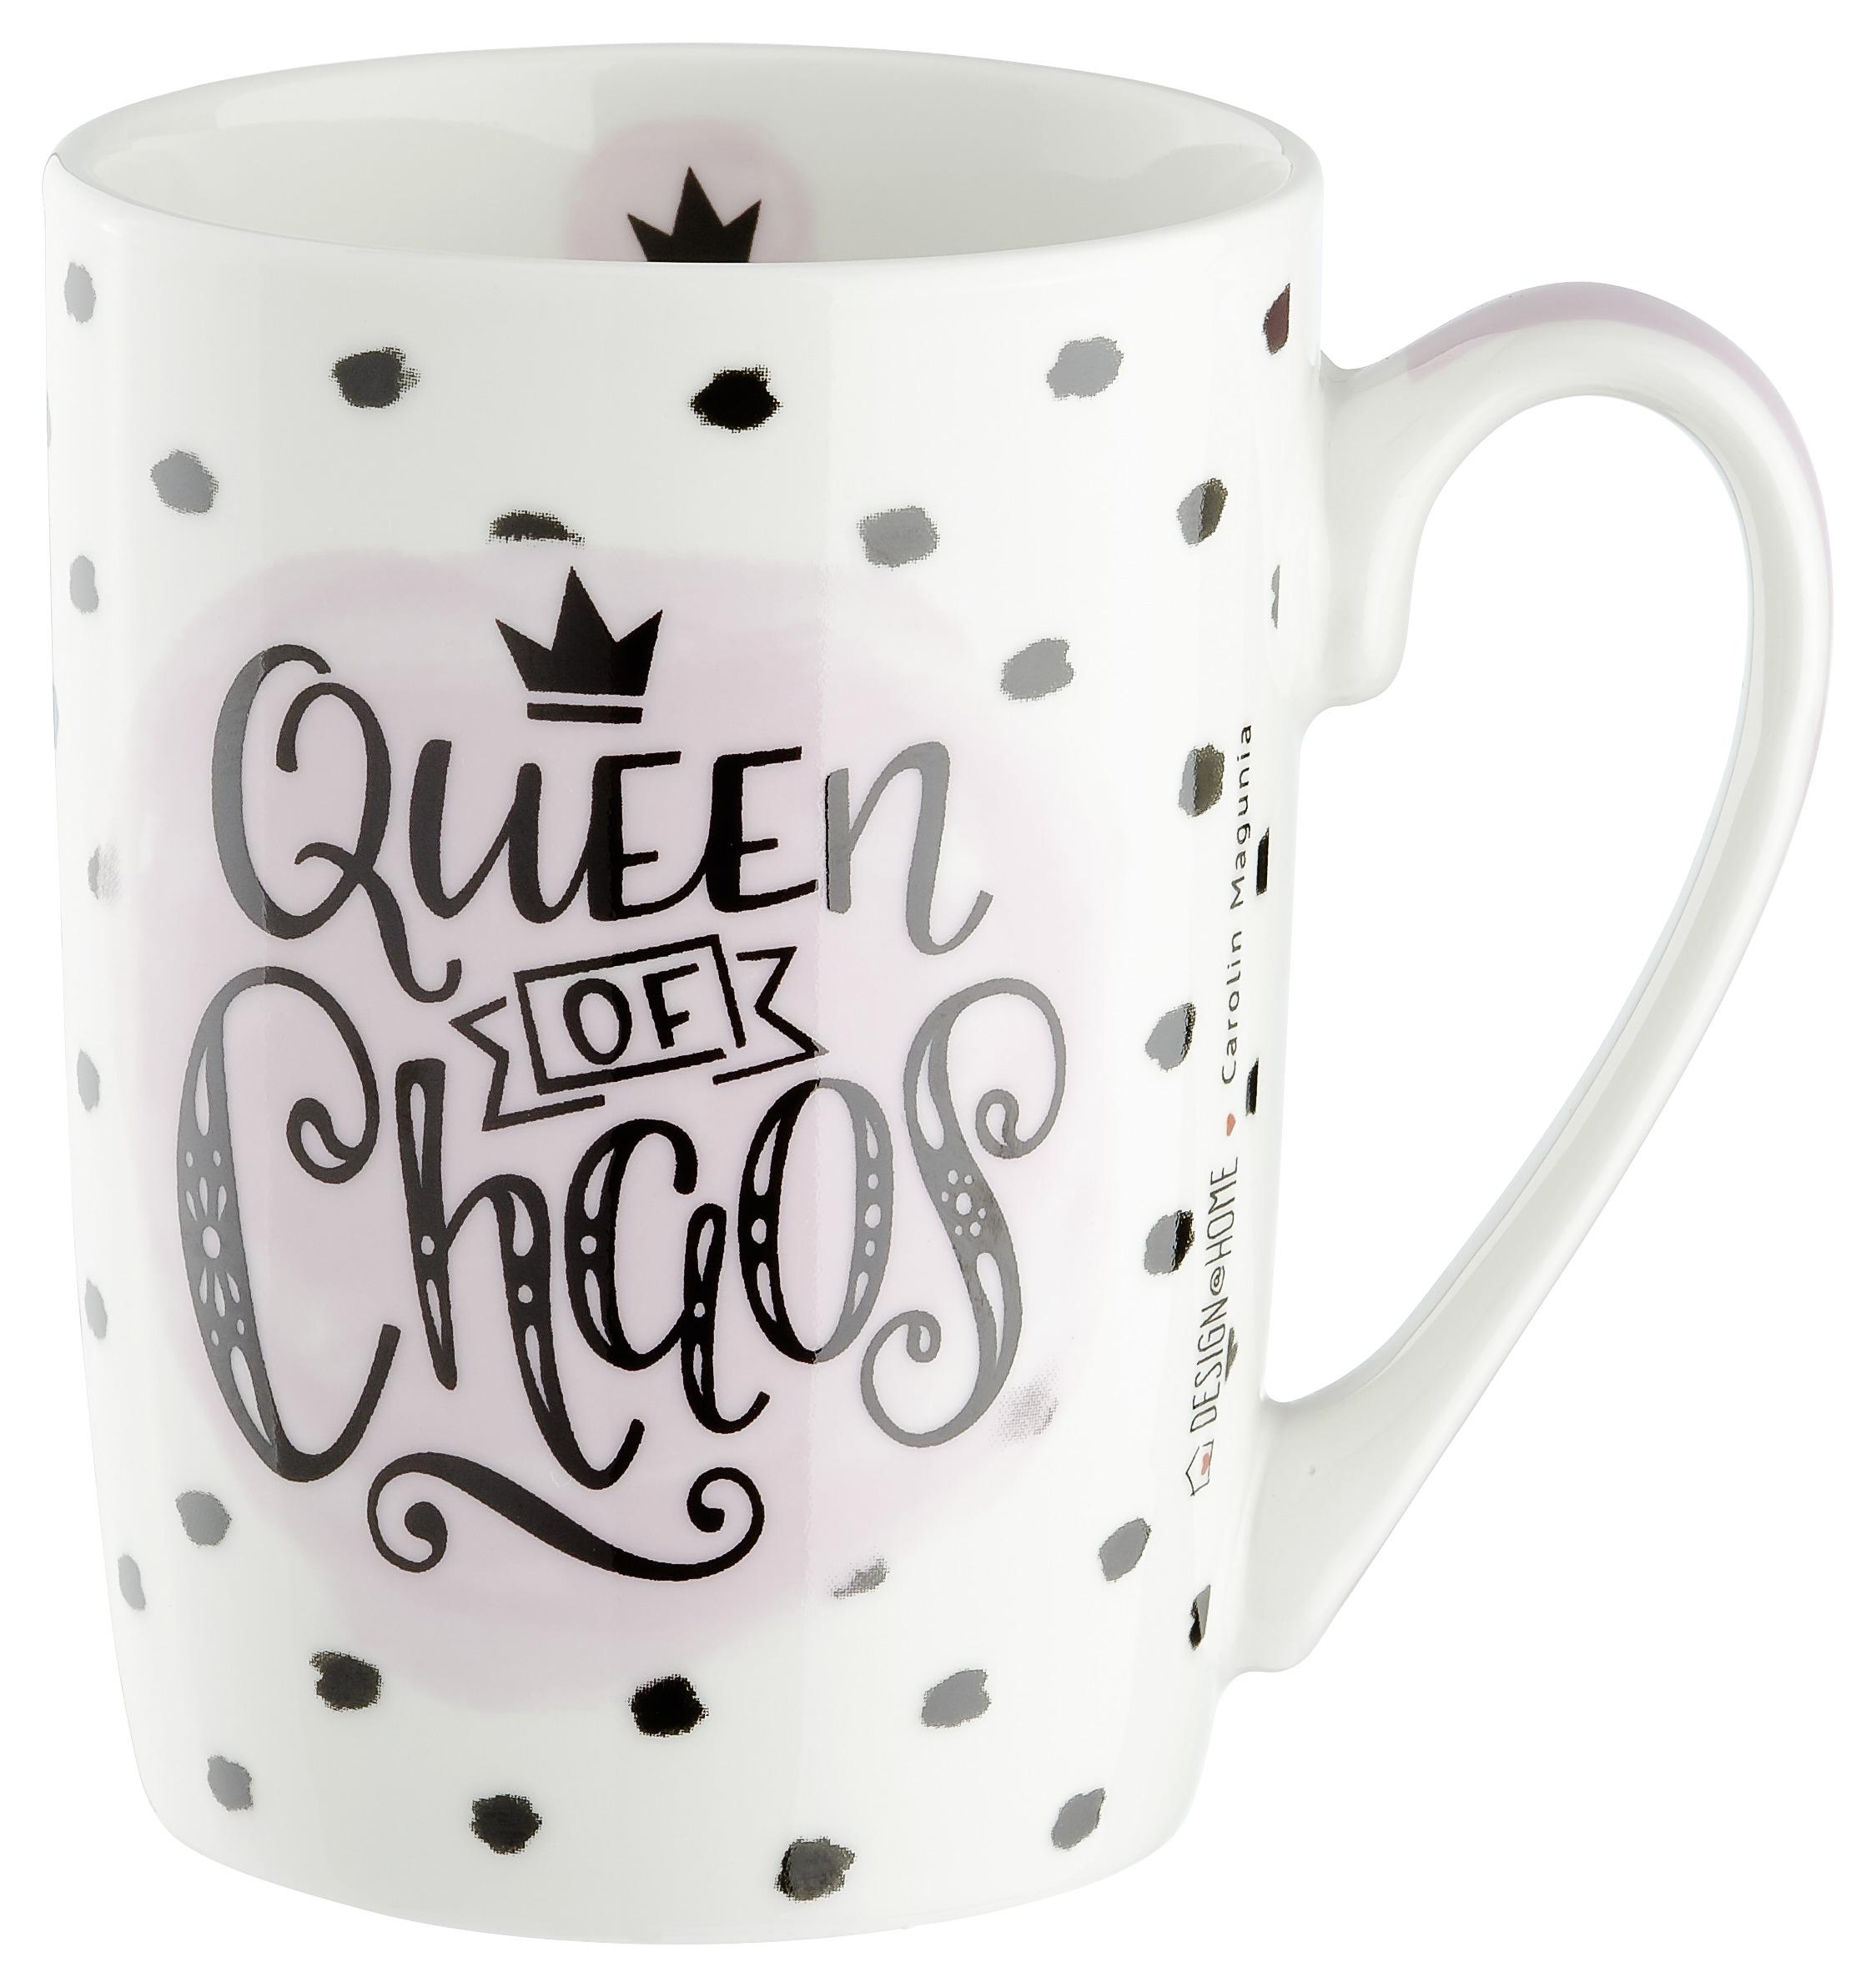 Hrnček Na Kávu Queen Of Chaos Ca. 250ml - čierna/biela, Konvenčný, keramika (0,25l)